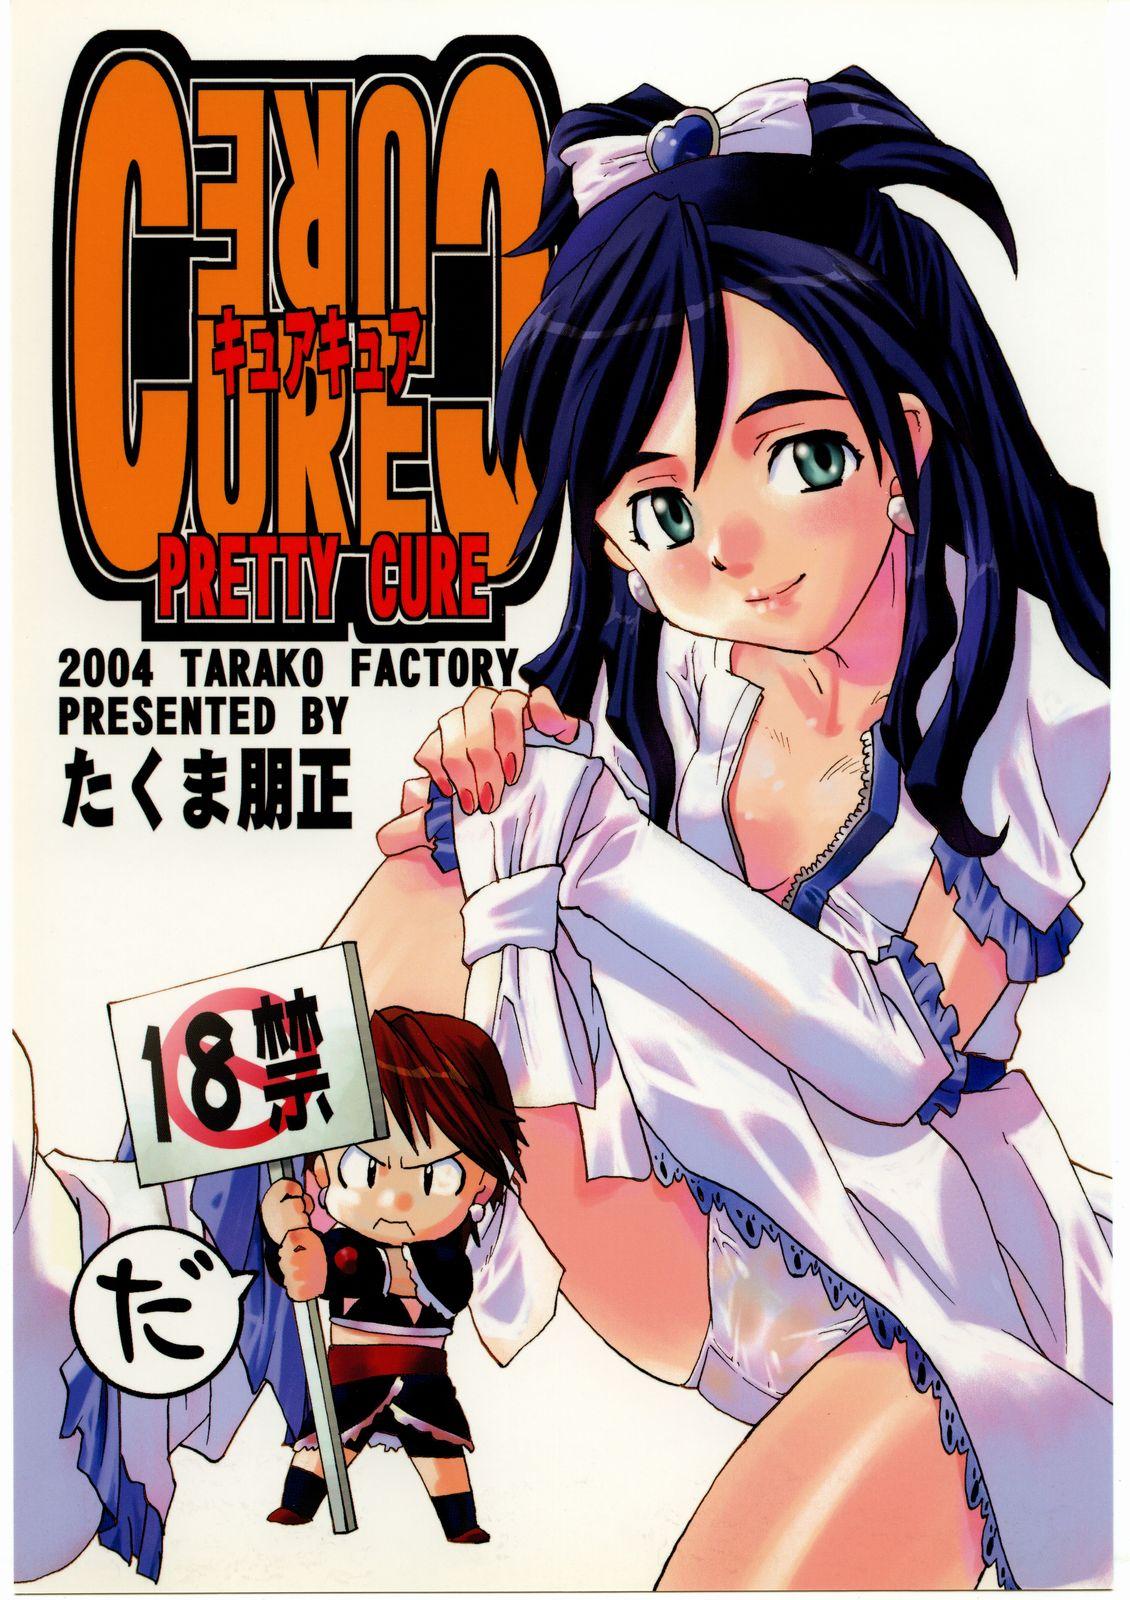 Real Couple Cure Cure - Futari wa pretty cure | futari wa precure Rebolando - Page 1